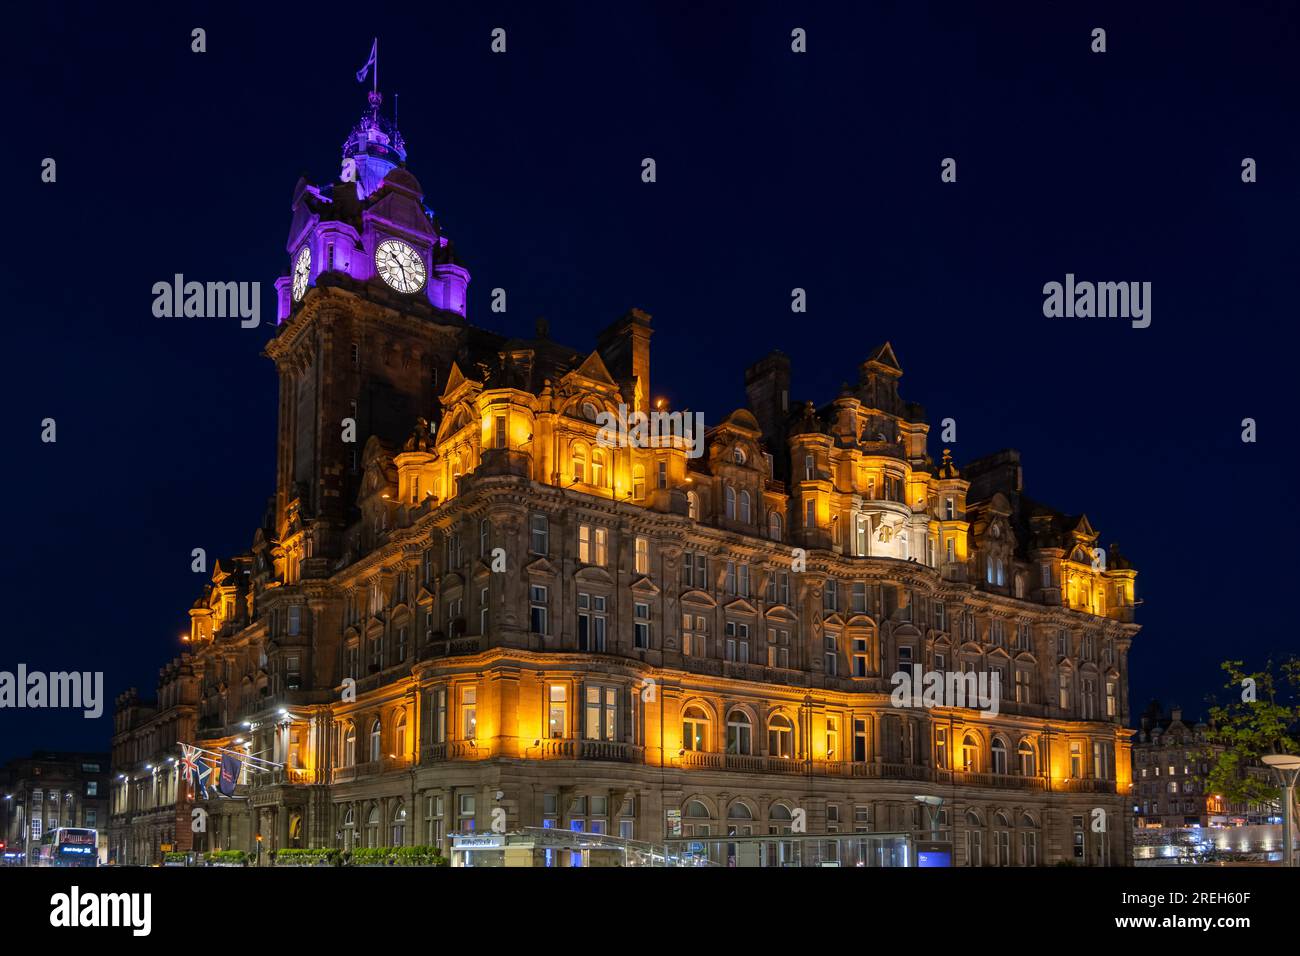 Das Balmoral Hotel at Night in Edinburgh, Schottland, Großbritannien. Ehemaliges North British Station Hotel, viktorianische Architektur mit Elementen des schottischen Baronial, Ro Stockfoto